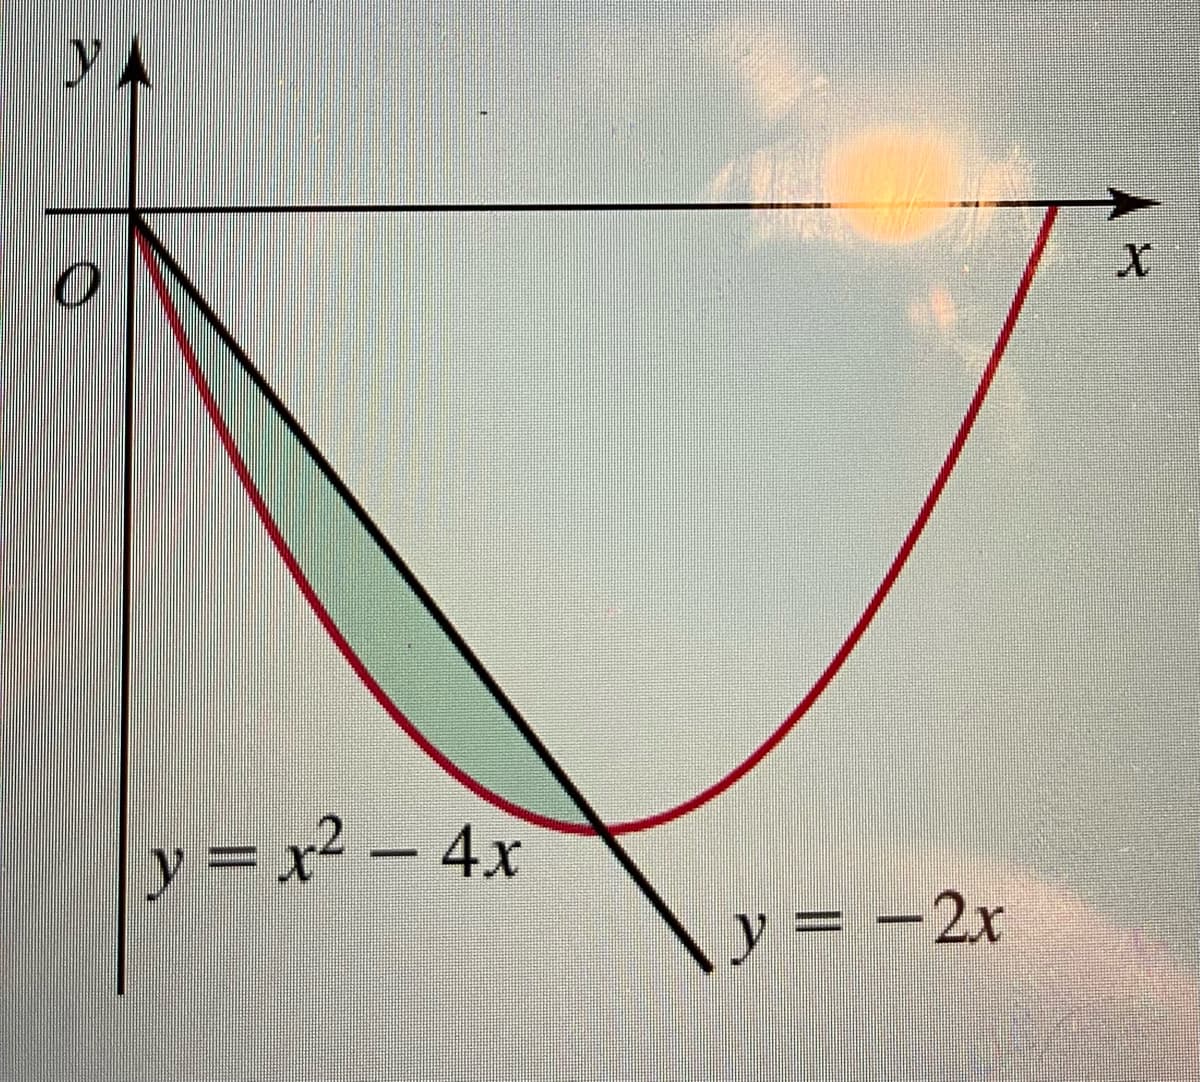 YA
y
=x² - 4x
y
= -2x
